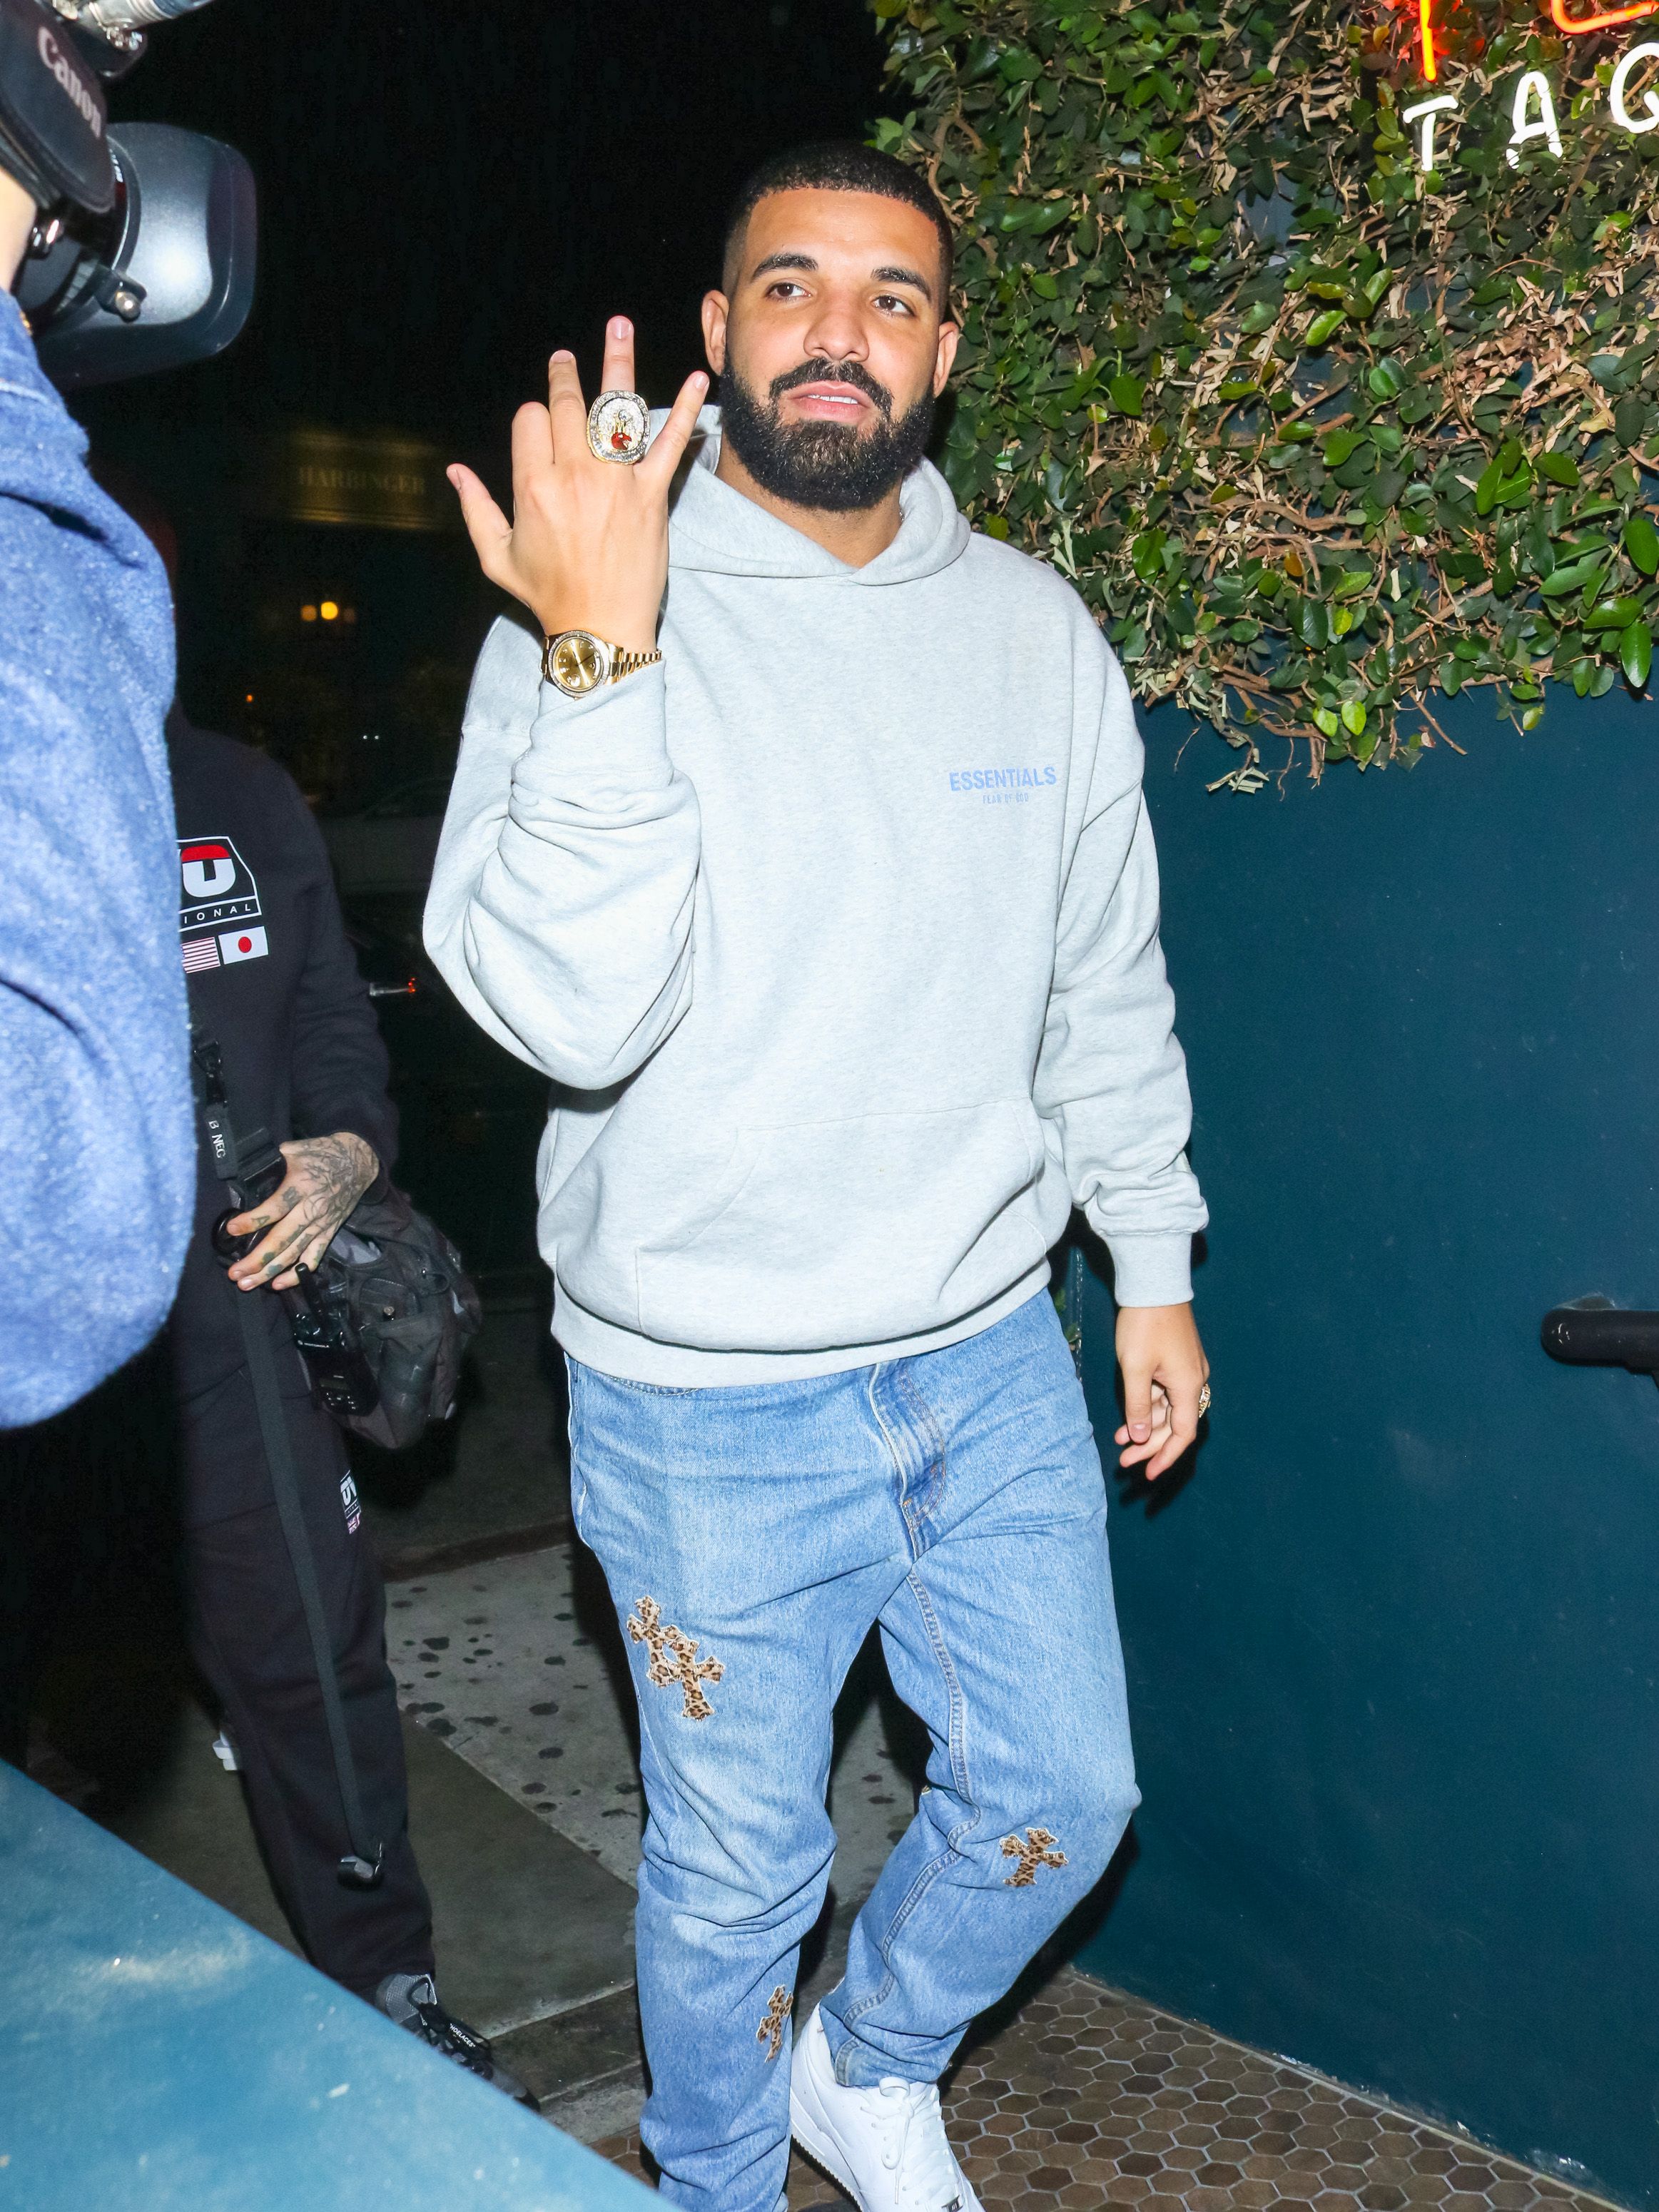 Drake says Rihanna "used" him